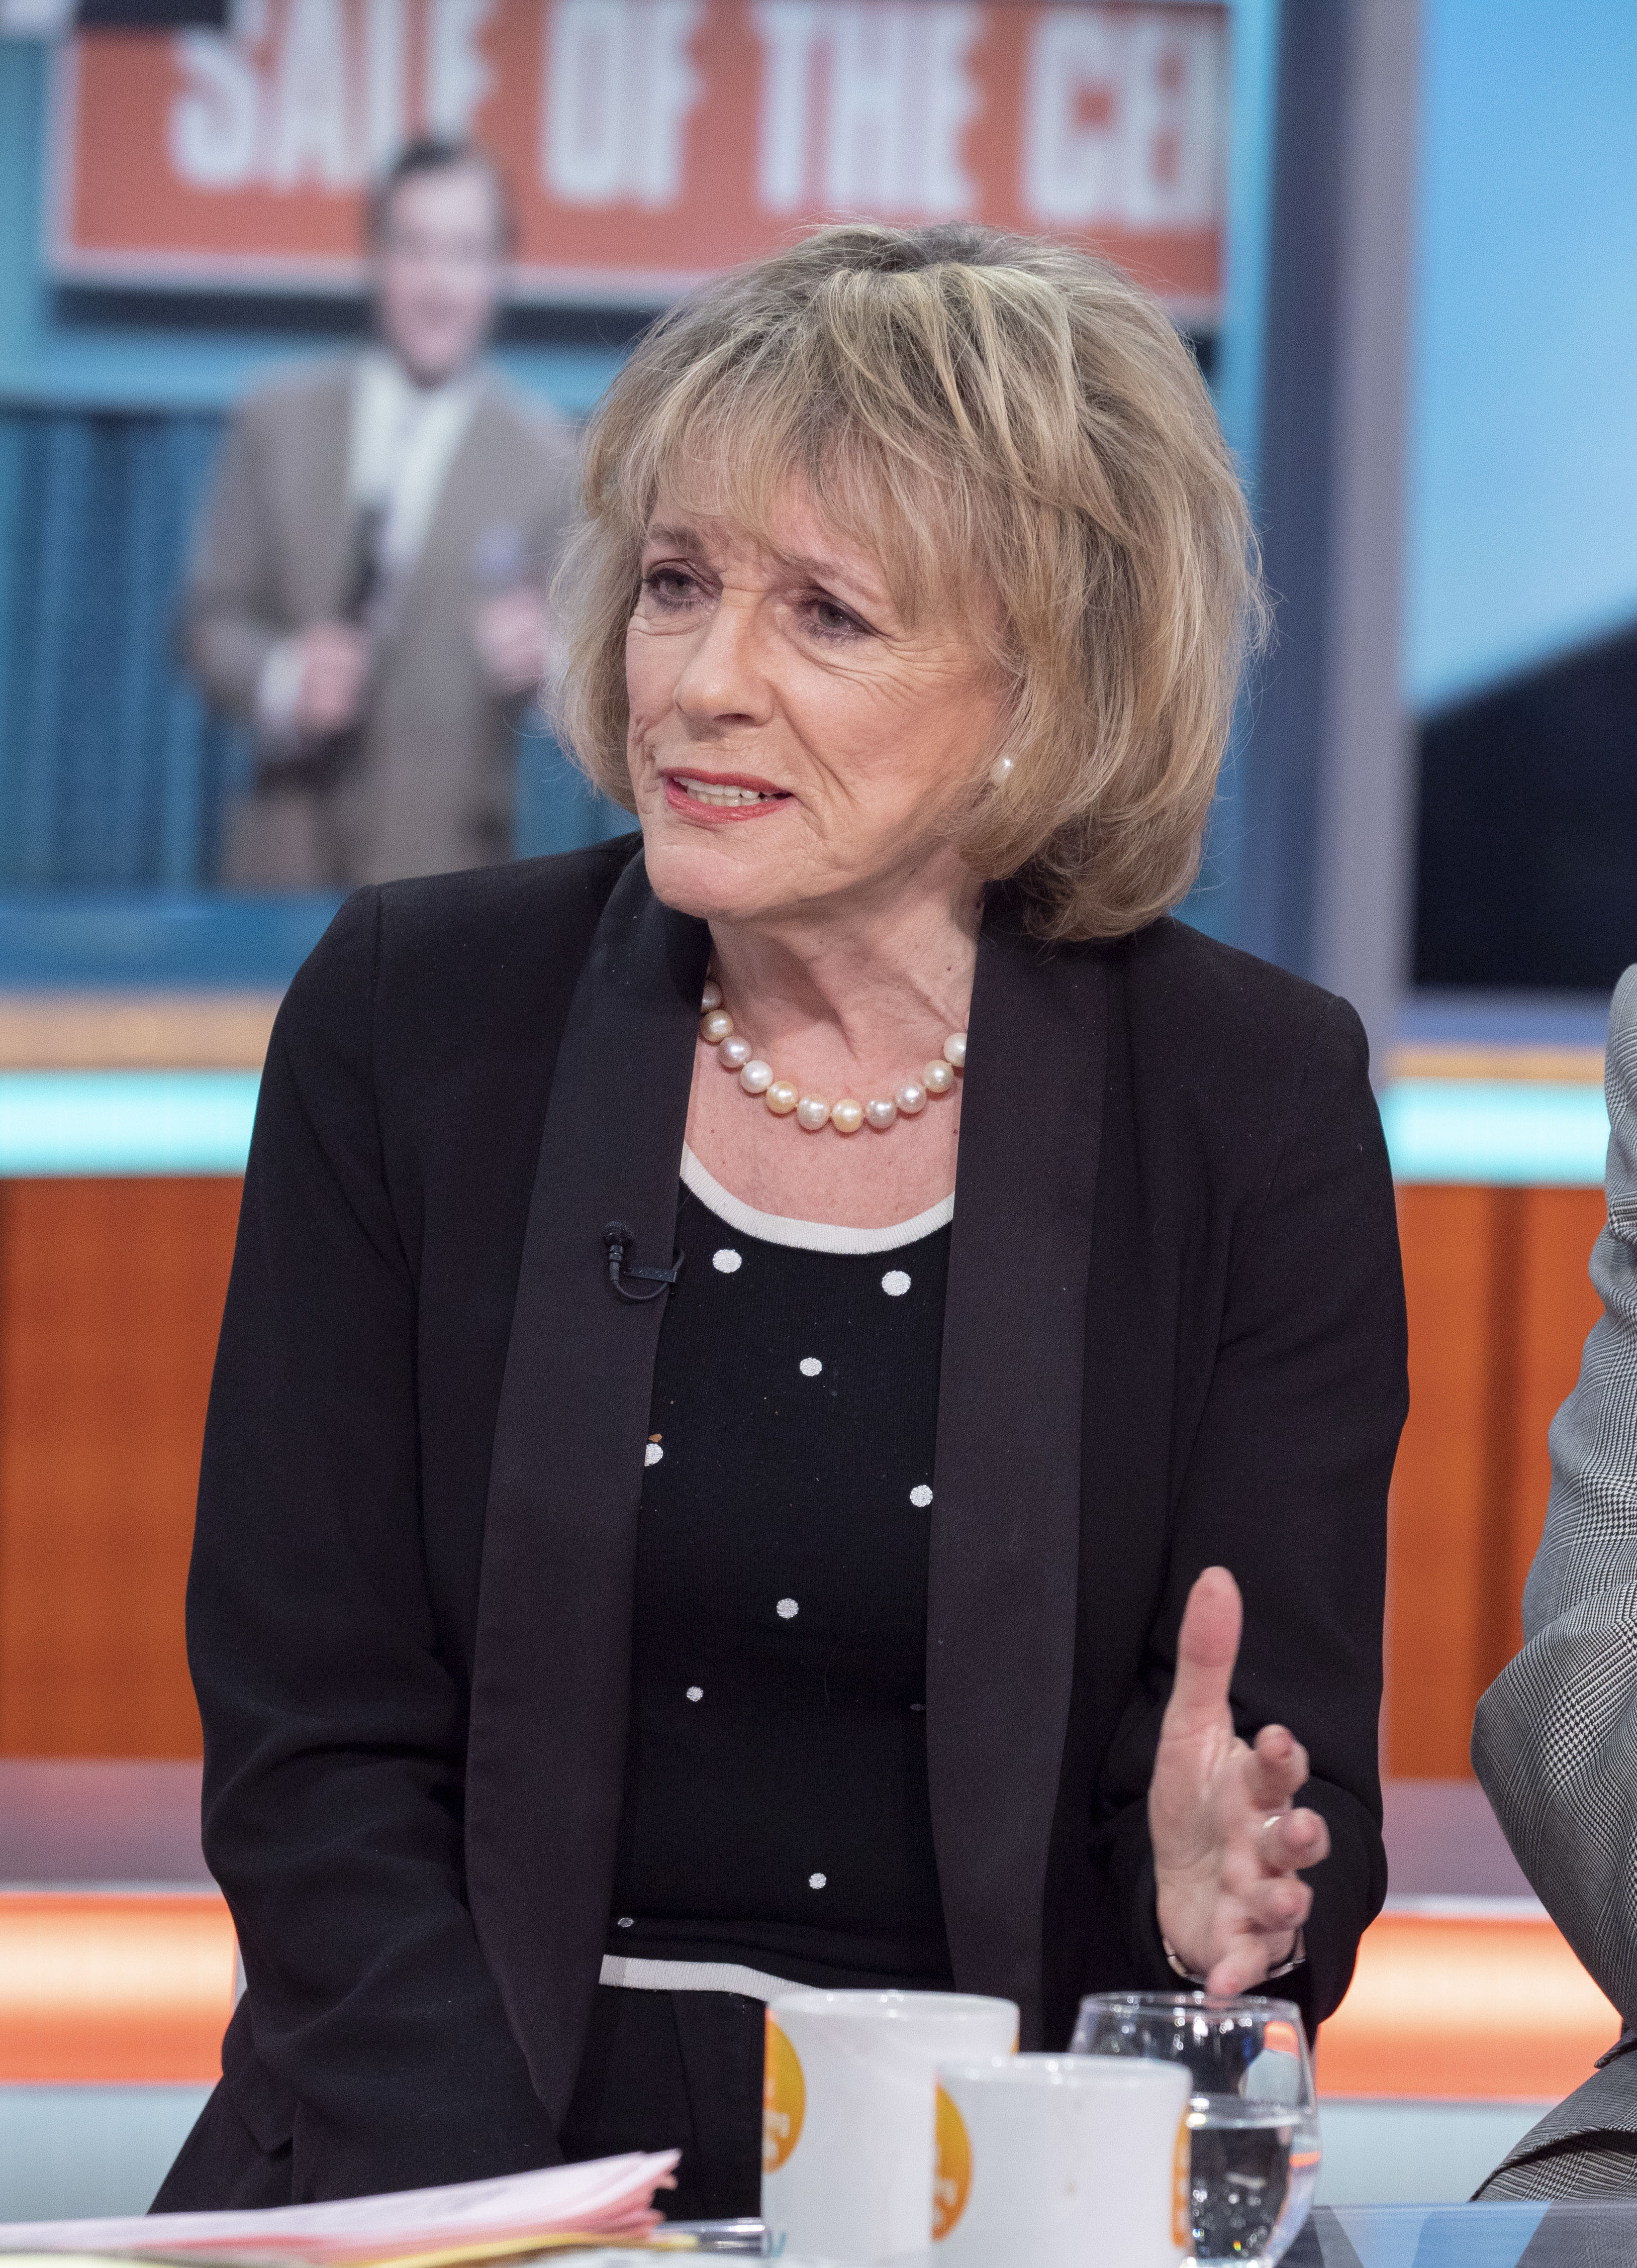 El líder laborista ha prometido a la leyenda de la televisión Dame Esther Rantzen, enferma de cáncer, que permitirá una votación sobre la muerte asistida si el Partido Laborista gana las próximas elecciones.